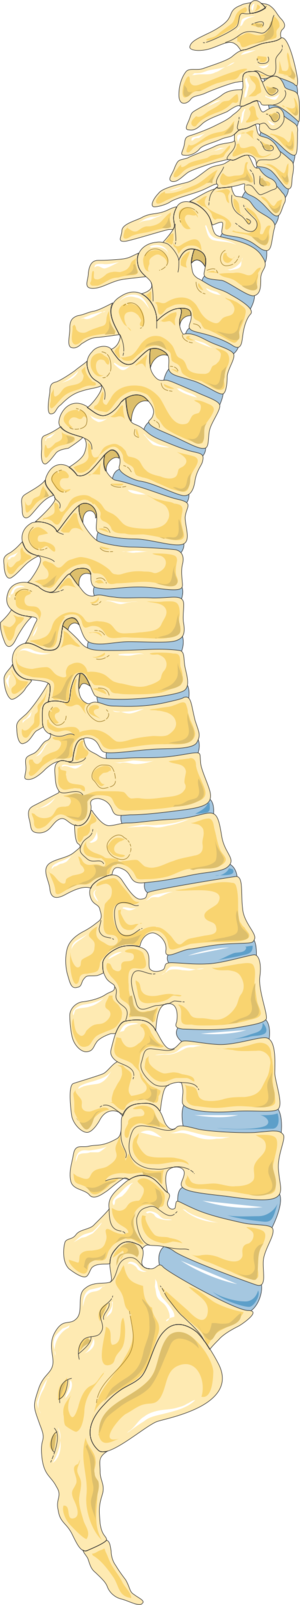 Spine - Vertebral column 3 -- Smart-Servier.png